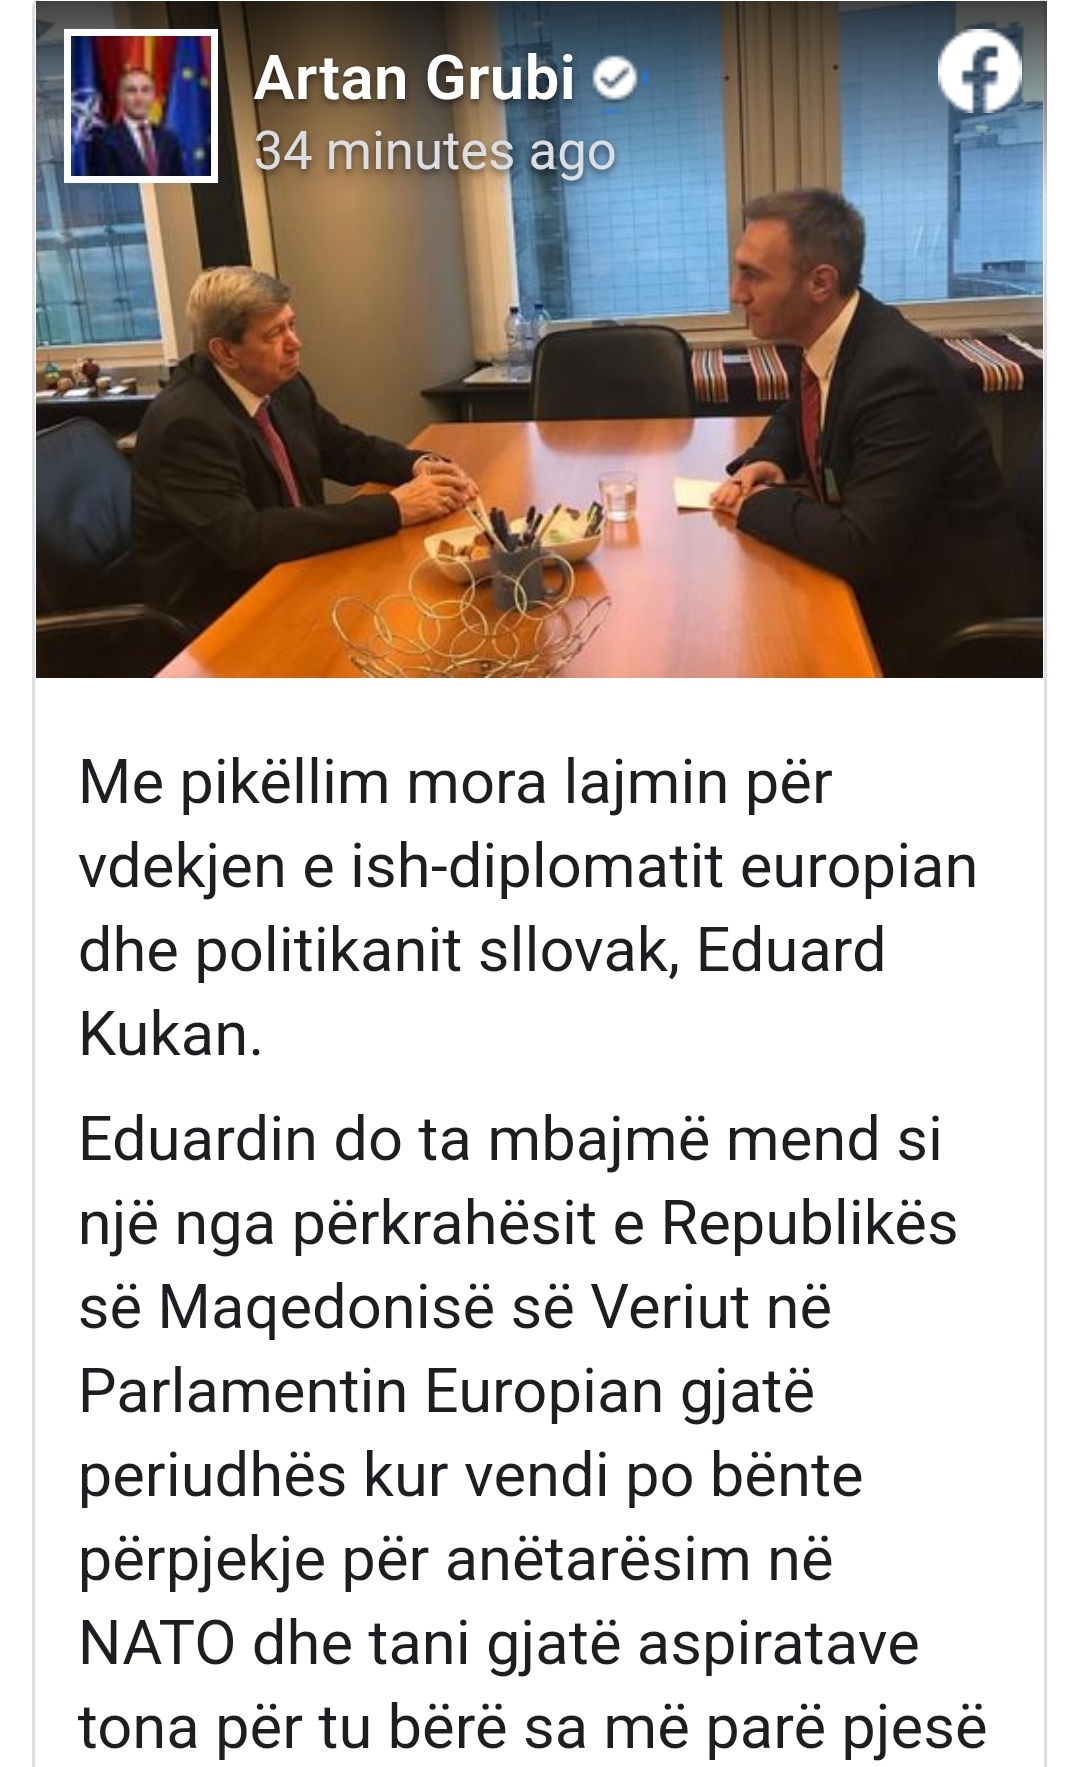 Grubi shpreh ngushëllime për vdekjen e ish-diplomatit europian, Eduard Kukan